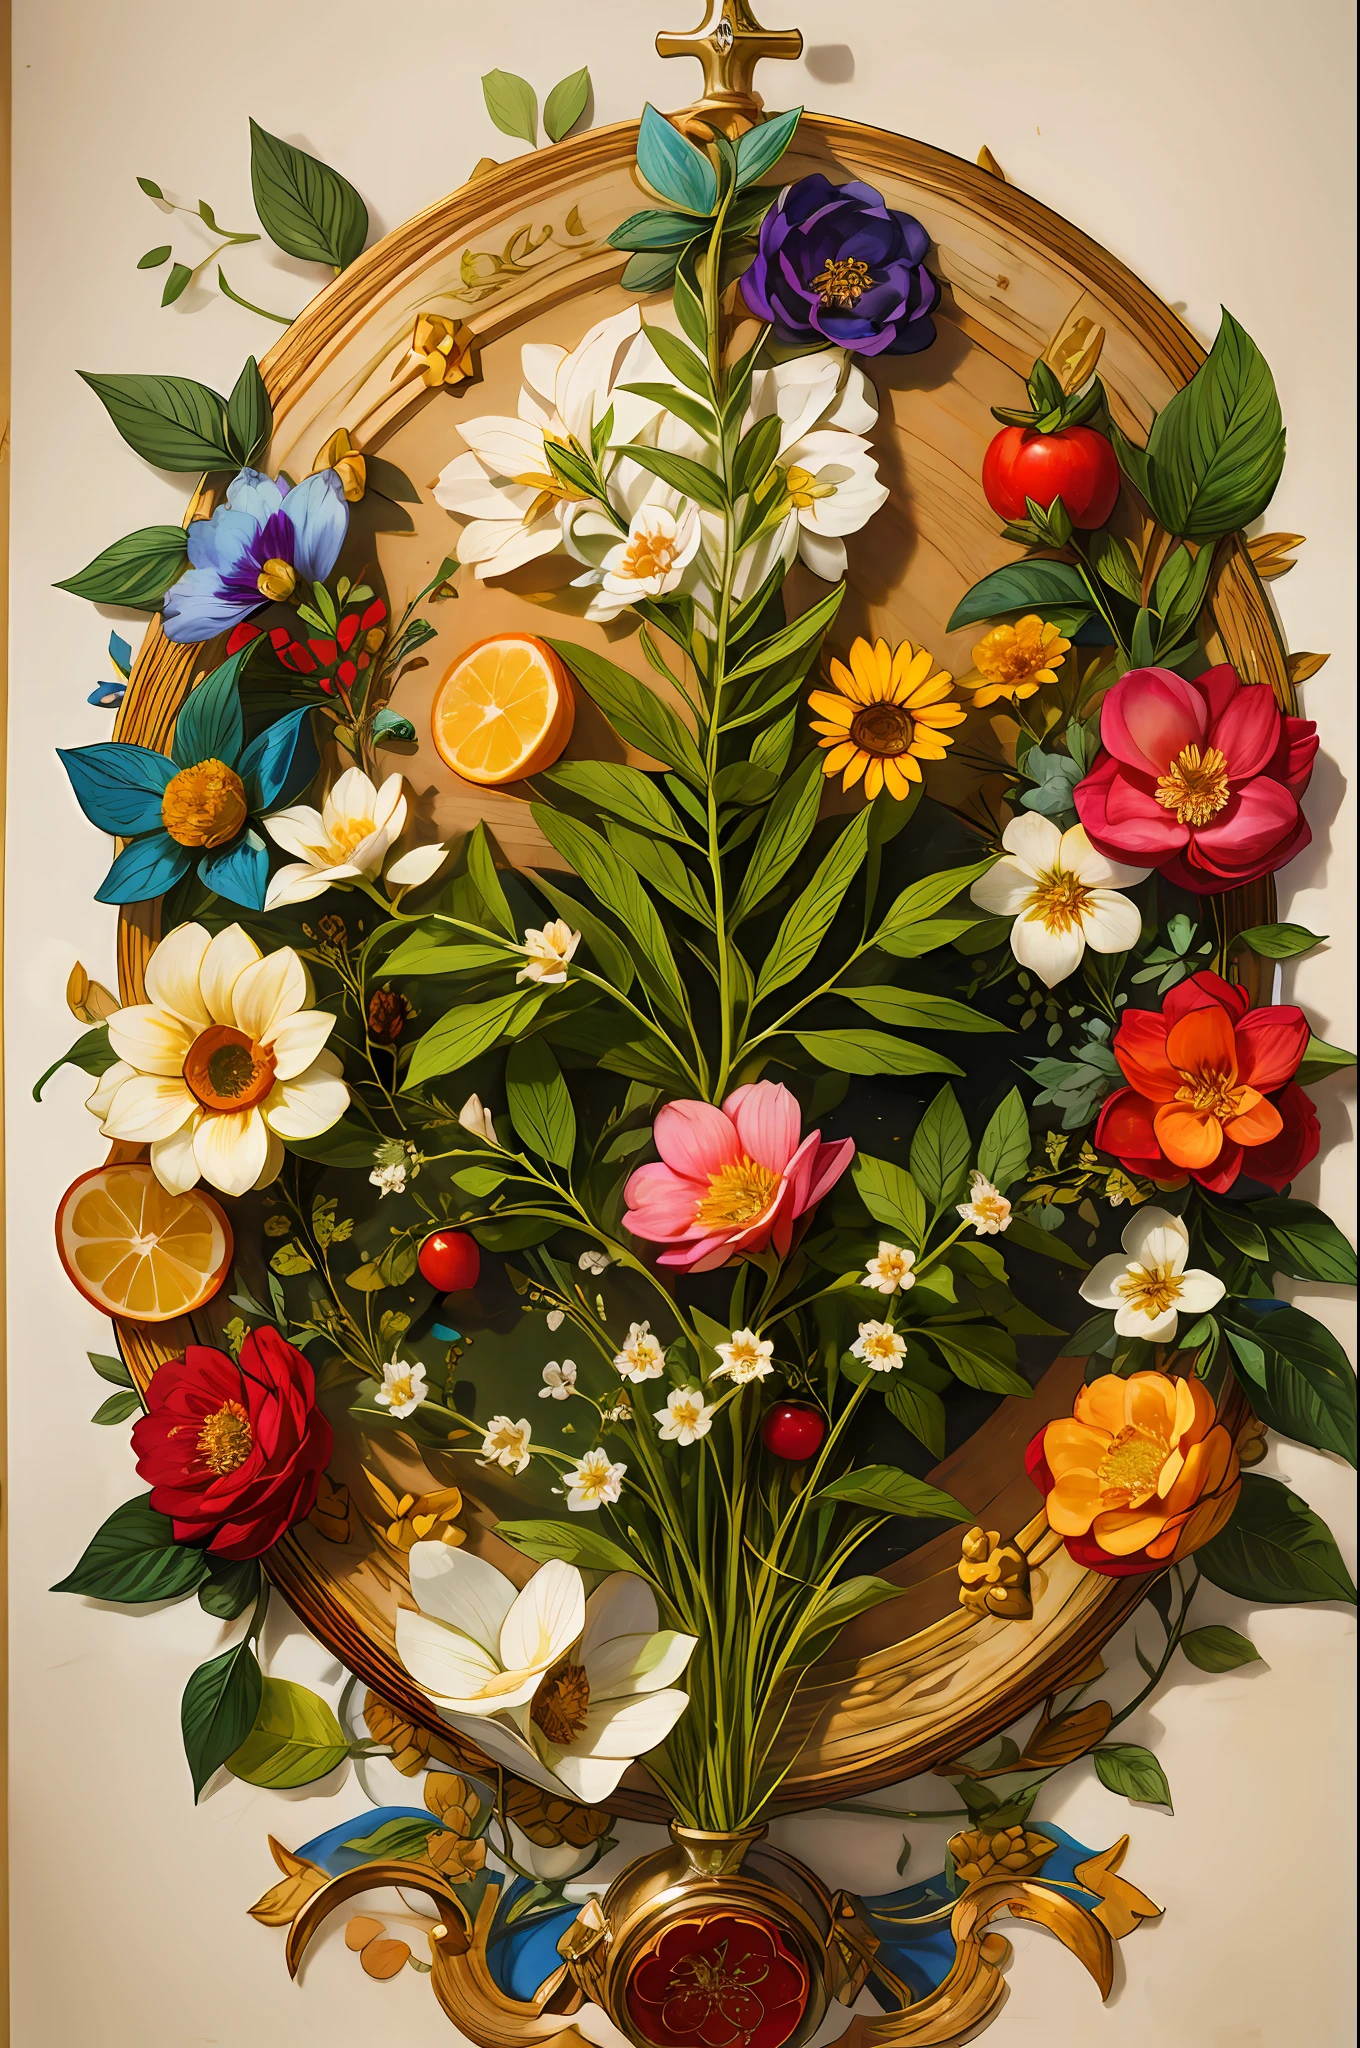 약초 삽화가 포함된 중세 약초 원고 페이지의 자세한 그림, with floral and 과일 illustrations, 과일, 복잡한 텍스트, 유난히 높은 디테일, 위에서 공중보기, 중심